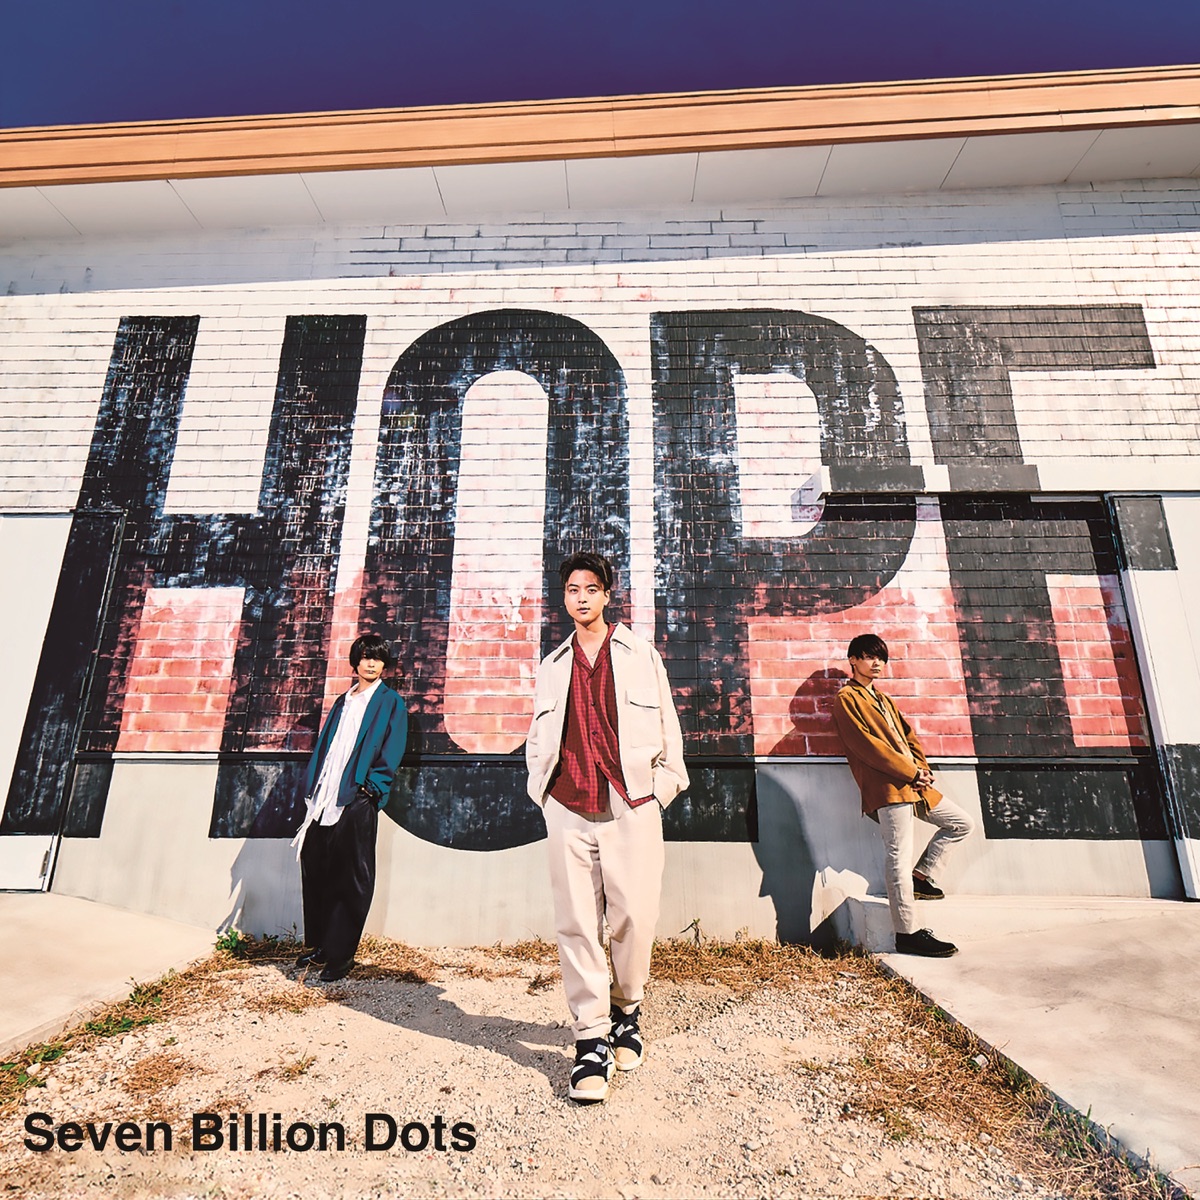 『Seven Billion Dots - マイナーロード 歌詞』収録の『HOPE』ジャケット